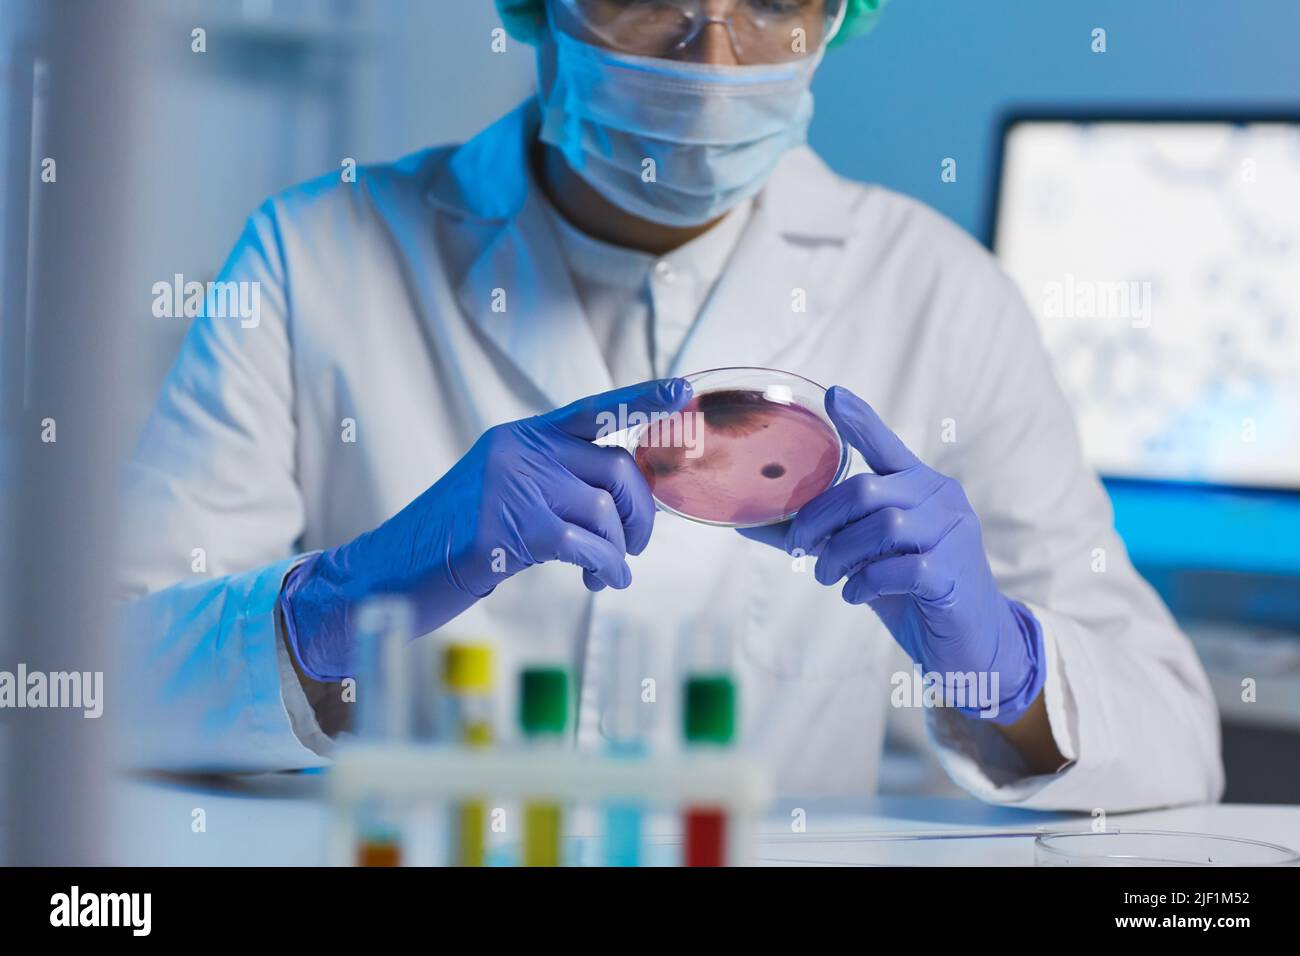 Nahaufnahme eines vielbeschäftigten Mikrobiologen in weißem Mantel und Gummihandschuhen, der am Schreibtisch sitzt und während der Arbeit im Labor Mikroorganismus in einer Petrischale betrachtet Stockfoto